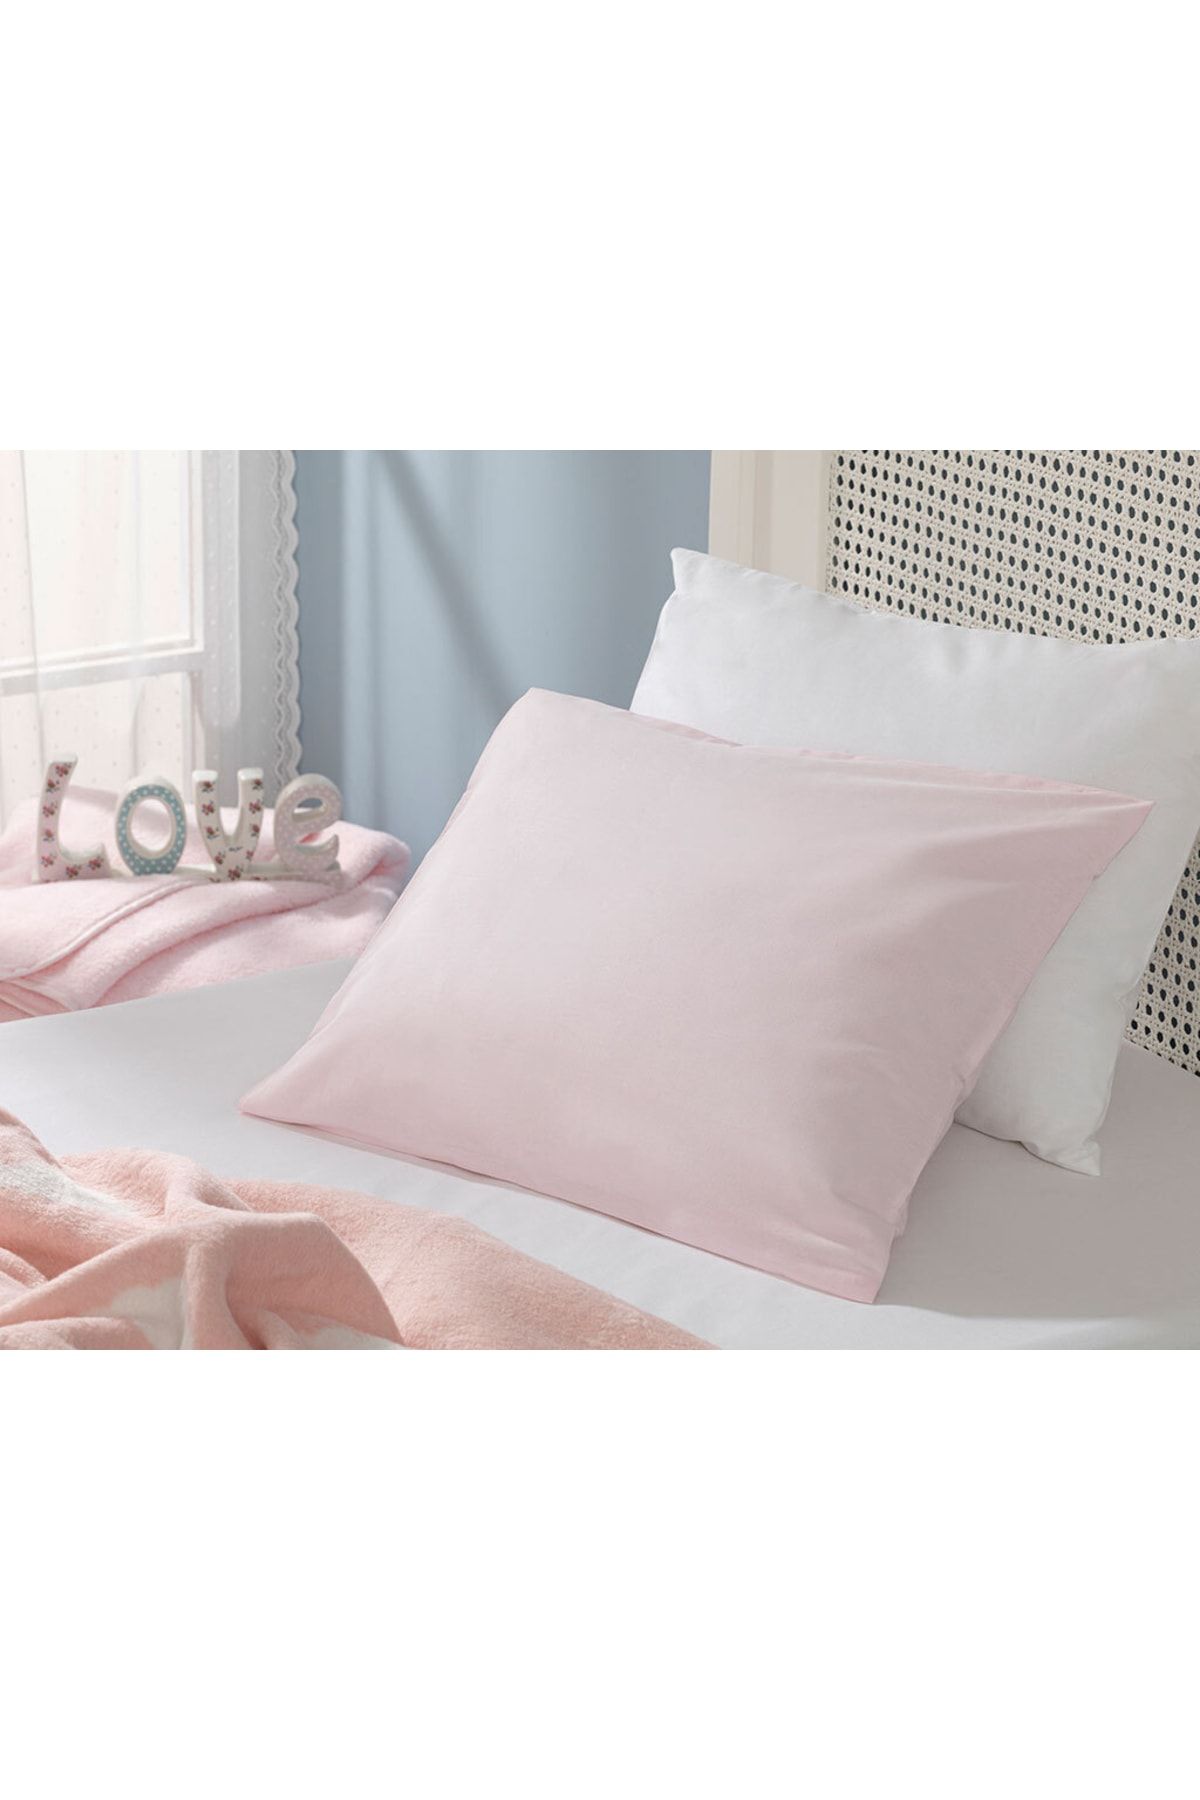 English Home Soft Pamuklu Bebek Yastık Kılıfı 35X45 Cm Pembe(iç yastığı dahil değildir.)